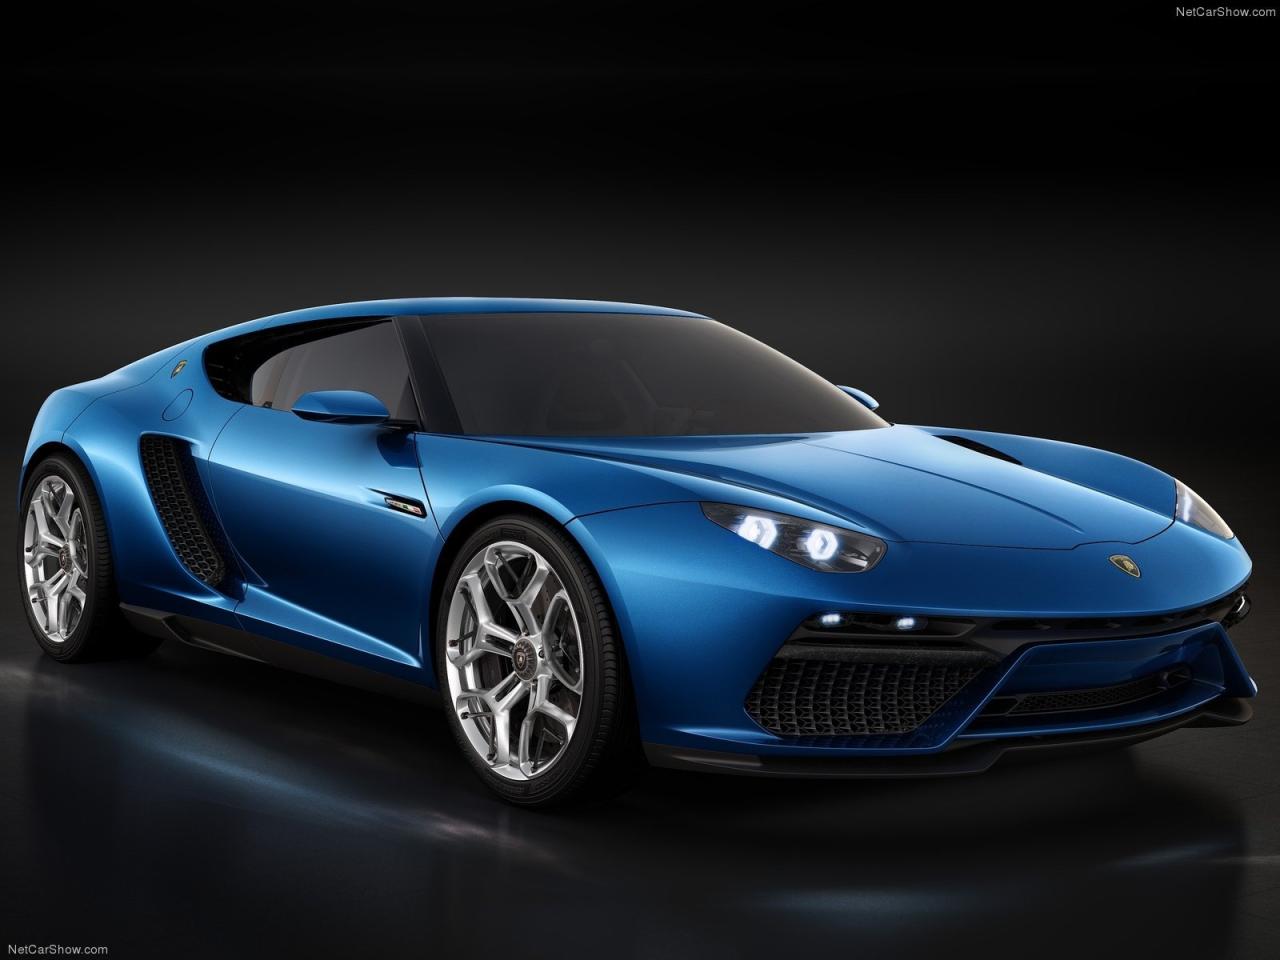 2014 Lamborghini Asterion LPI910 4 Concept